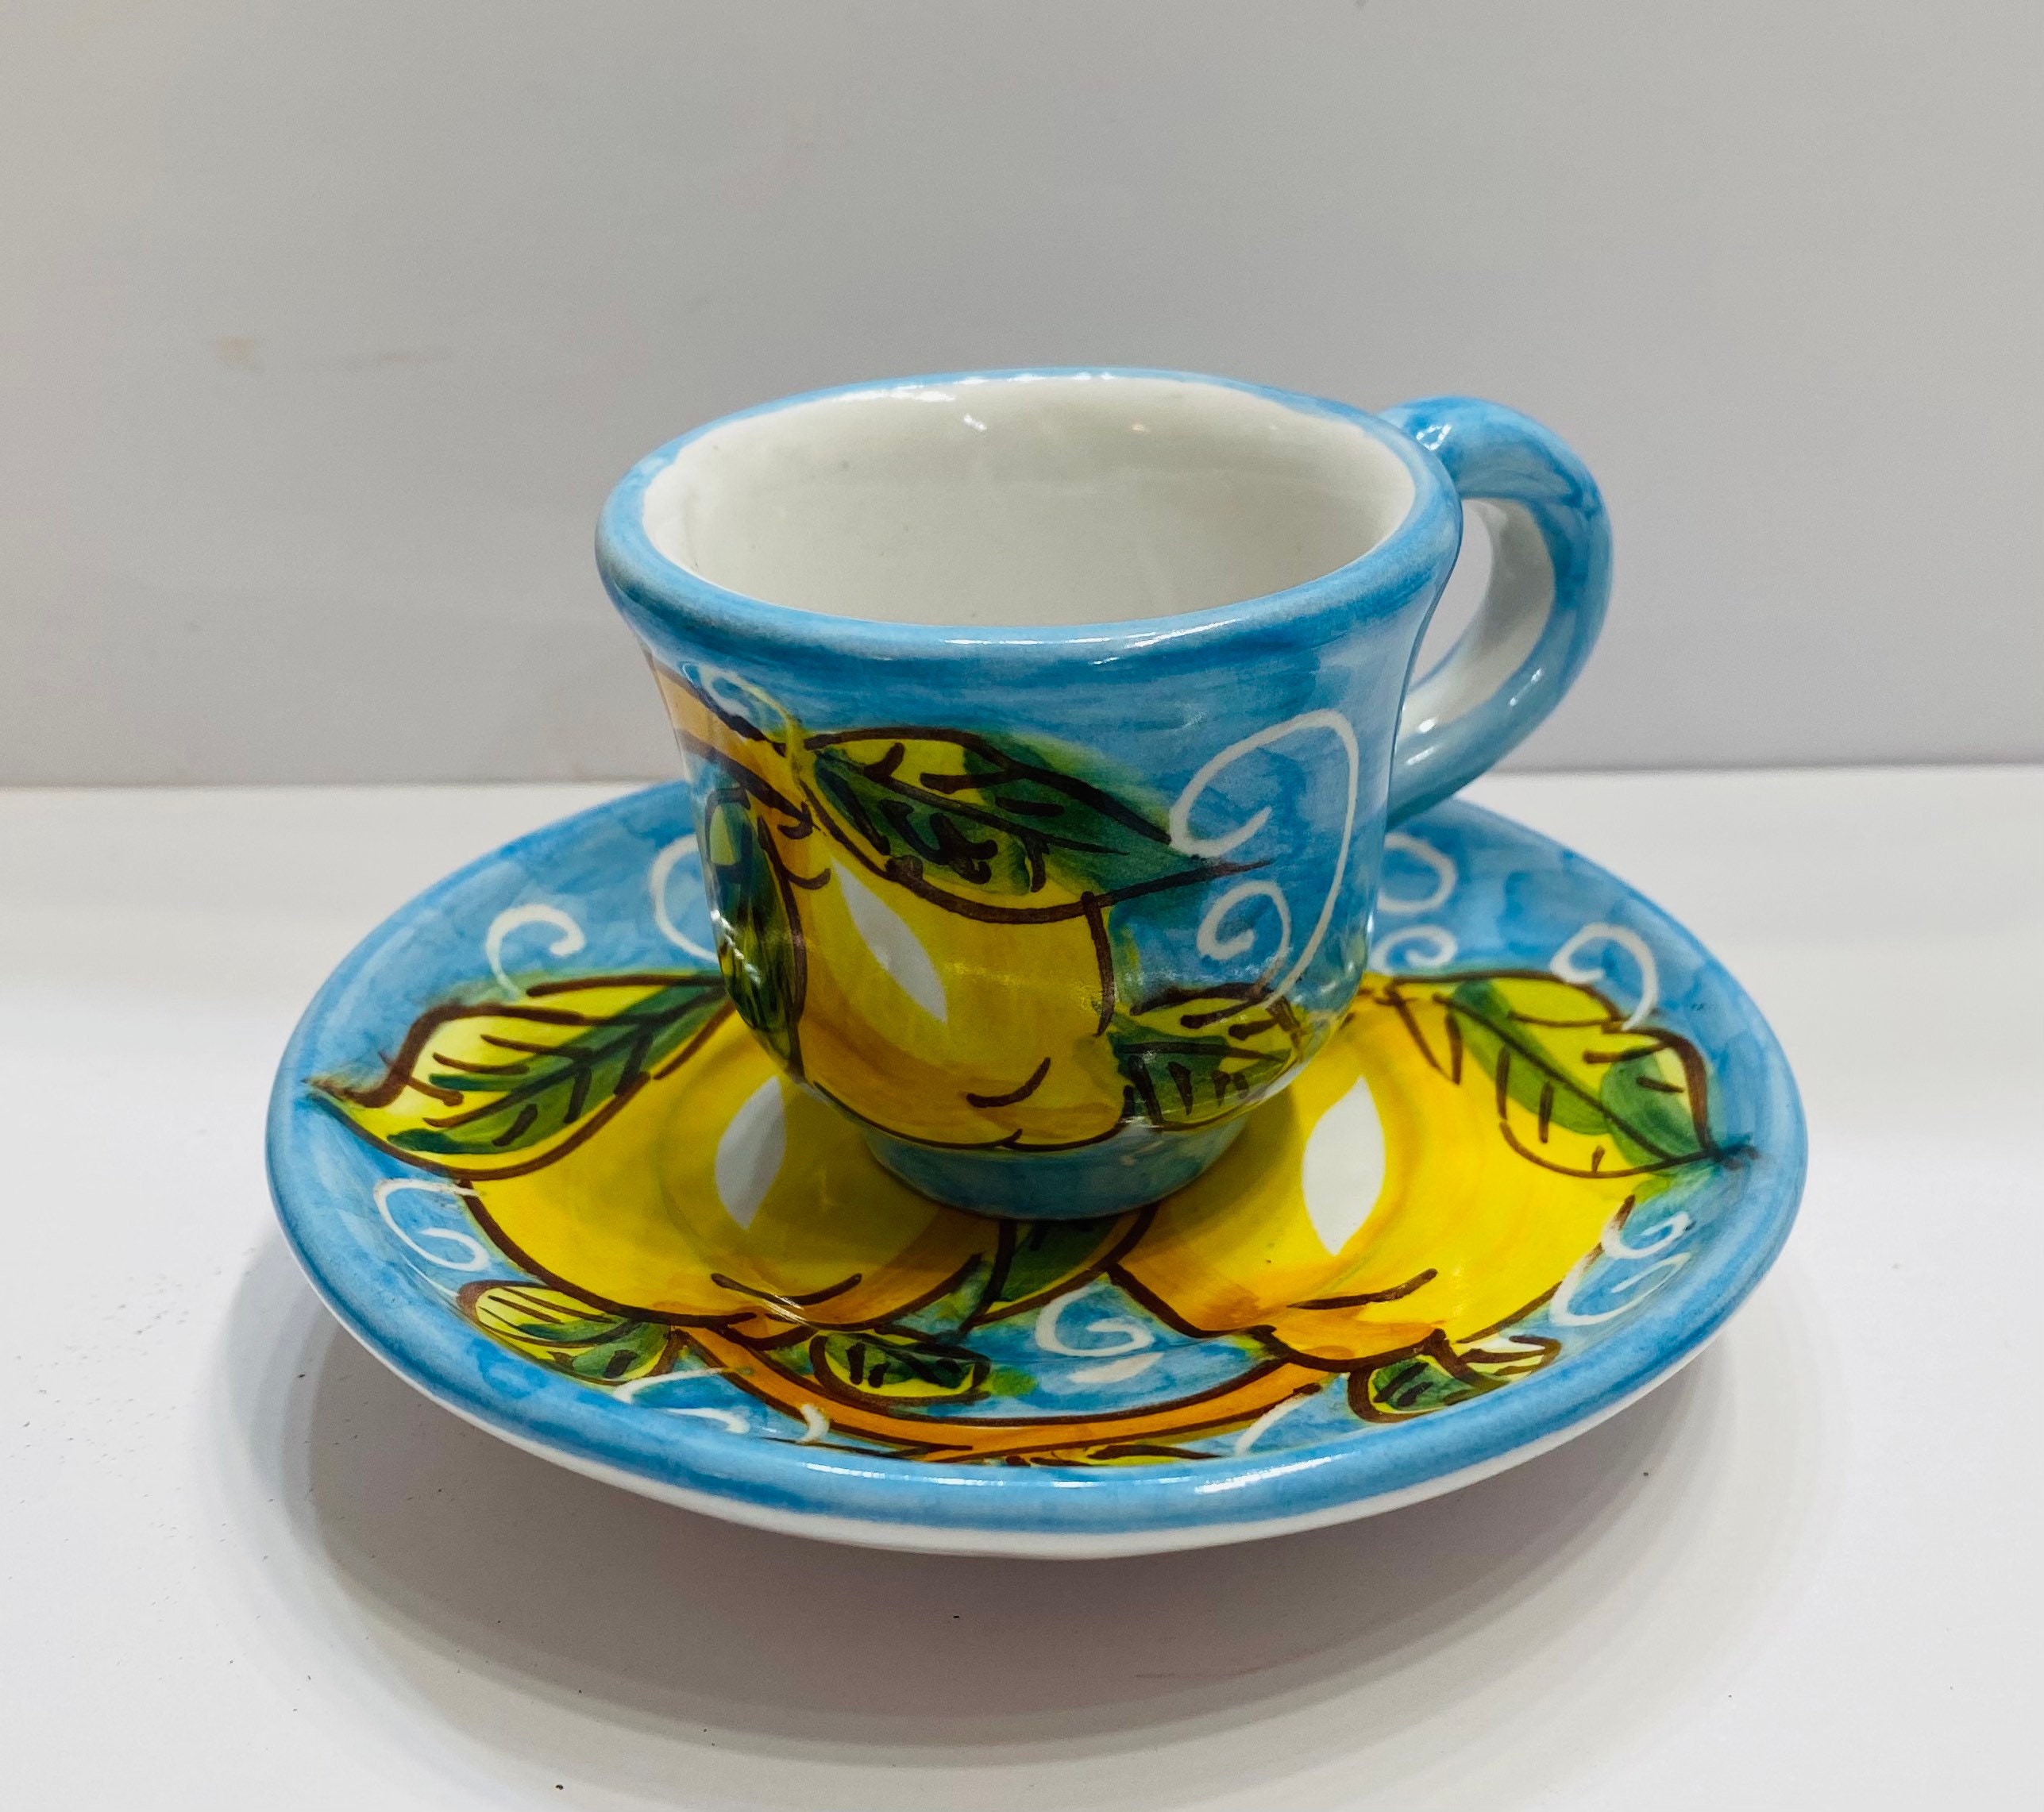 Espresso 6-cup set - Lemon style